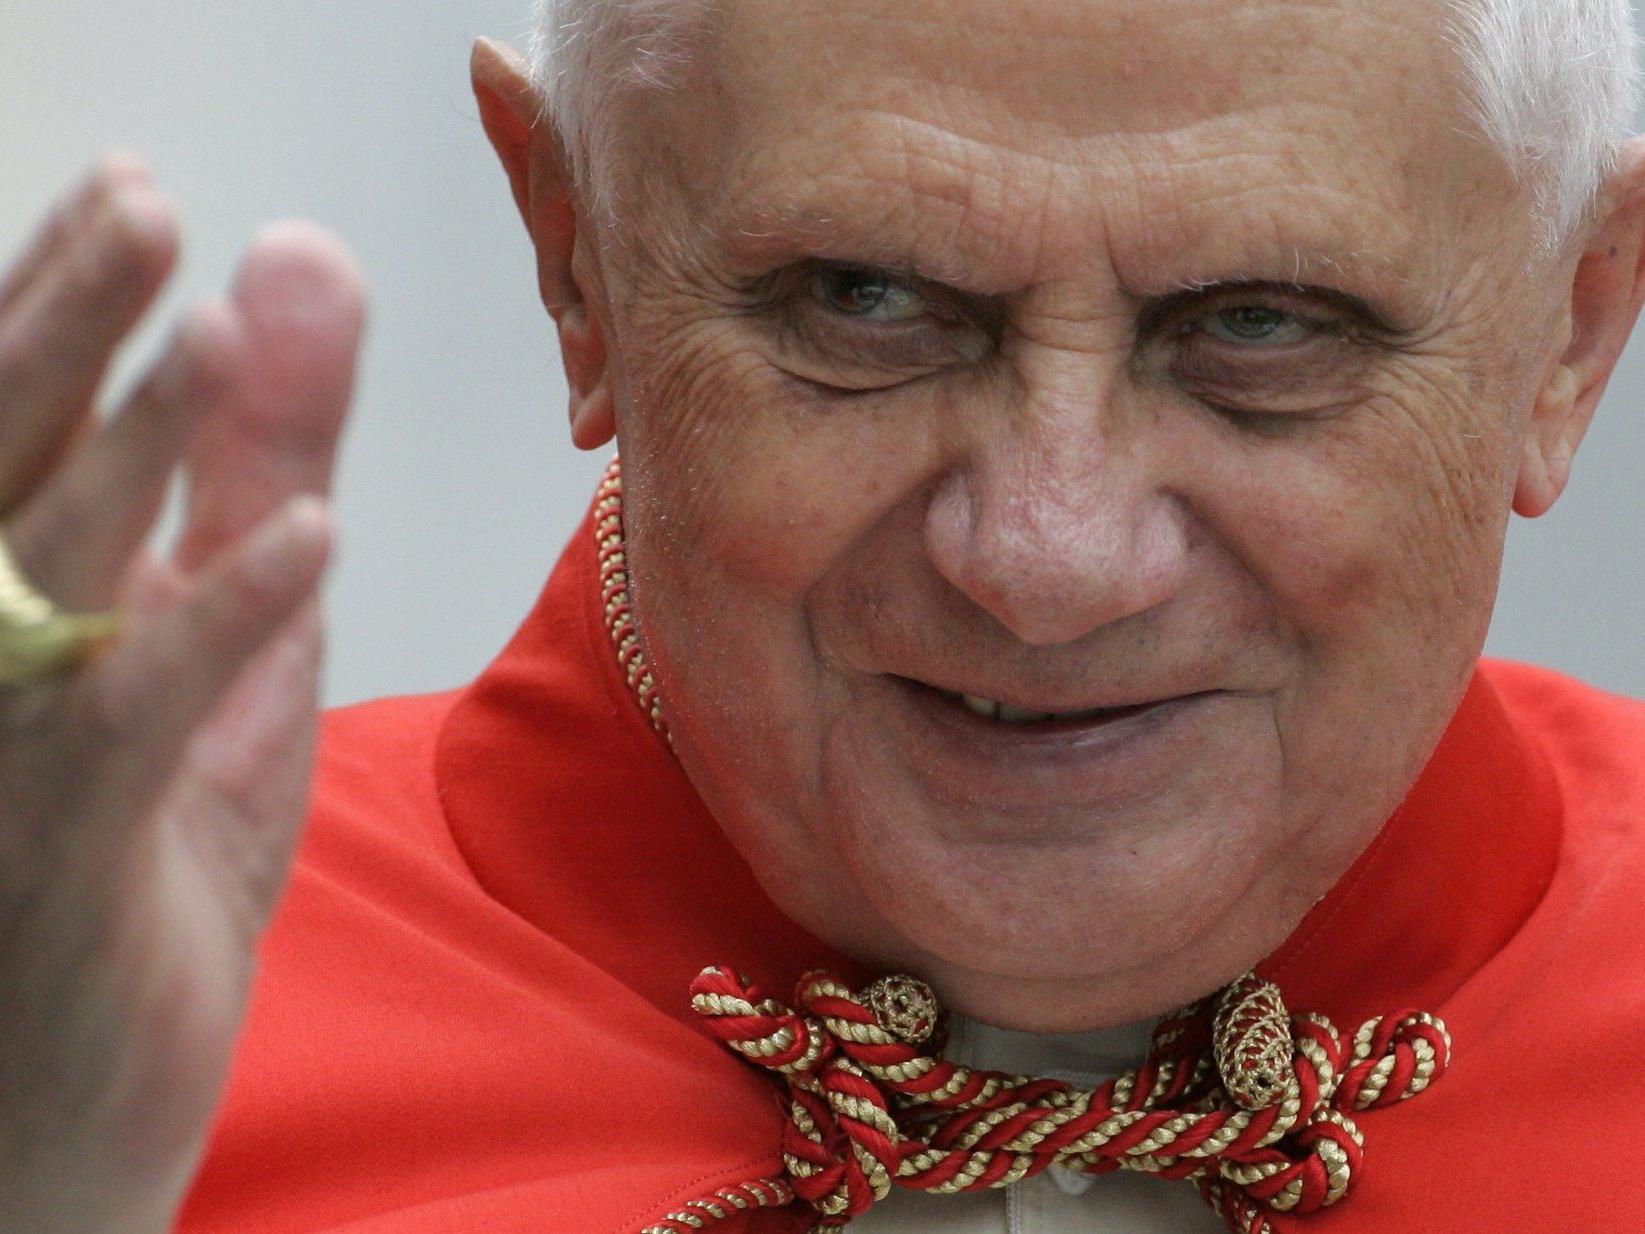 Den ehemaligen Papst Benedikt XVI. gibt es jetzt auch als Kondom-Bild.